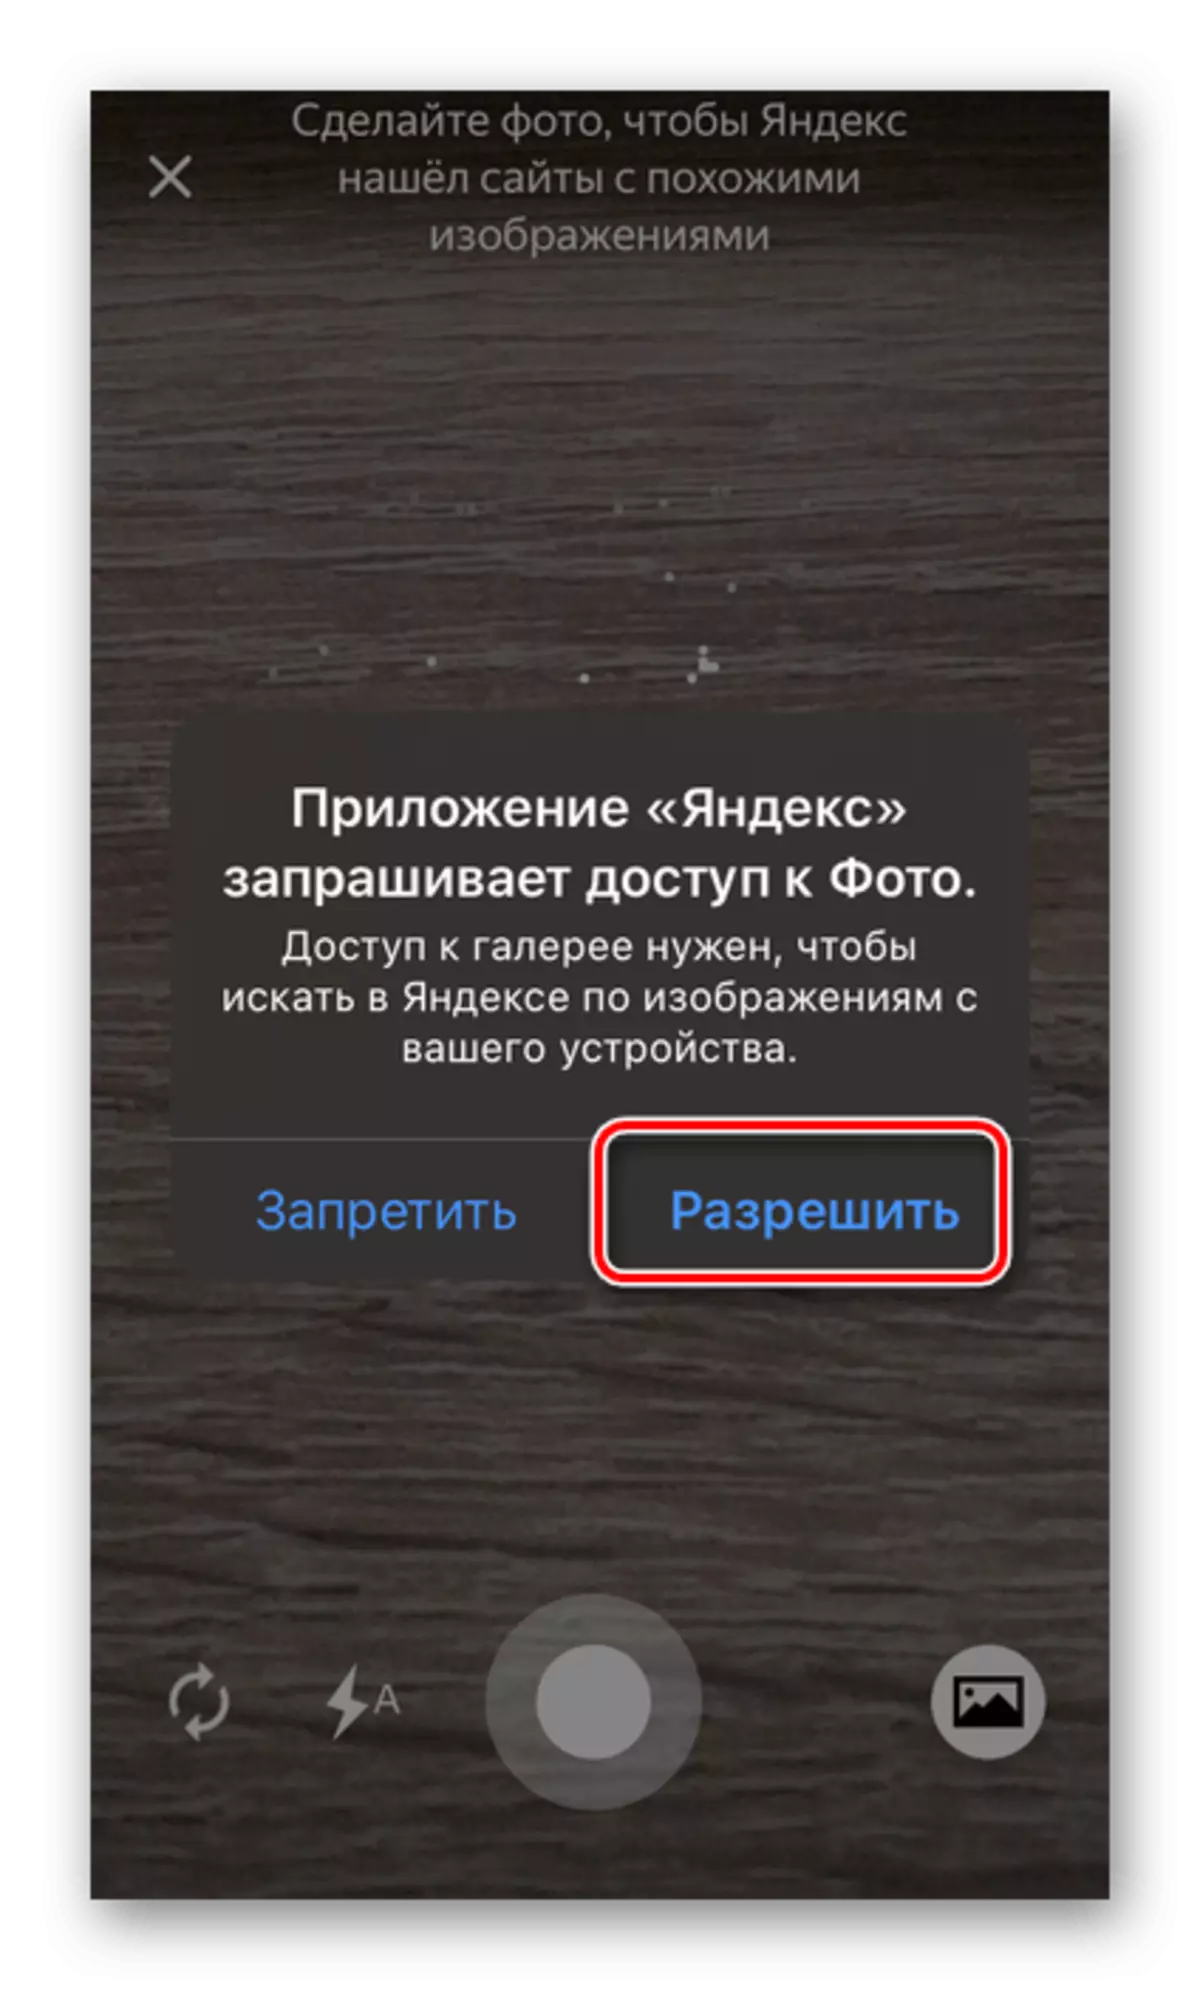 ફોન પર Yandex એપ્લિકેશનમાં ફોટોની ઍક્સેસની મંજૂરી આપો